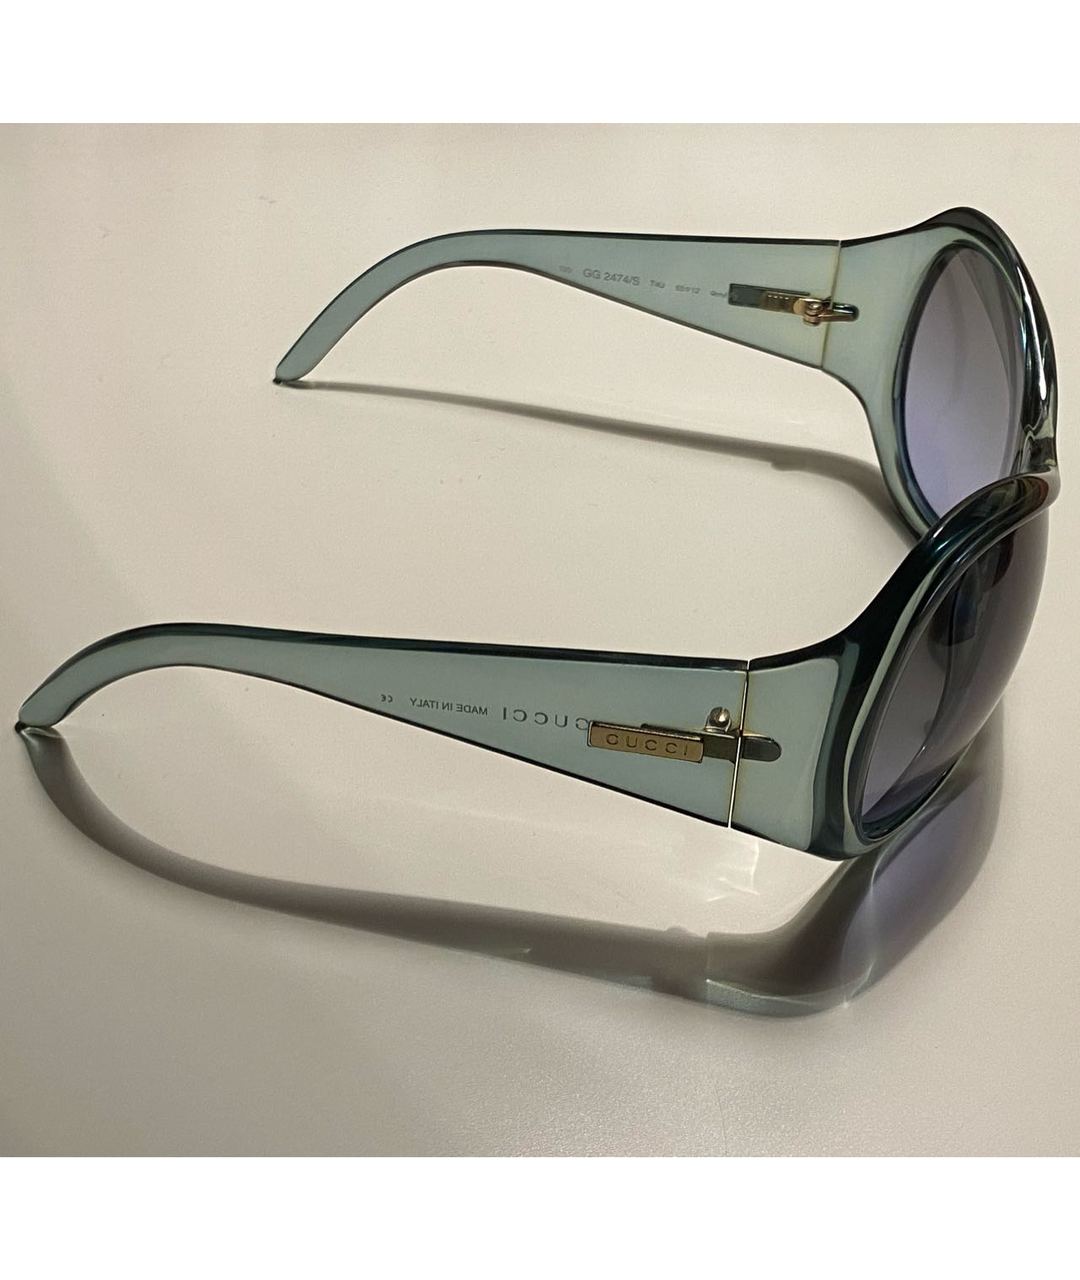 GUCCI Зеленые пластиковые солнцезащитные очки, фото 2